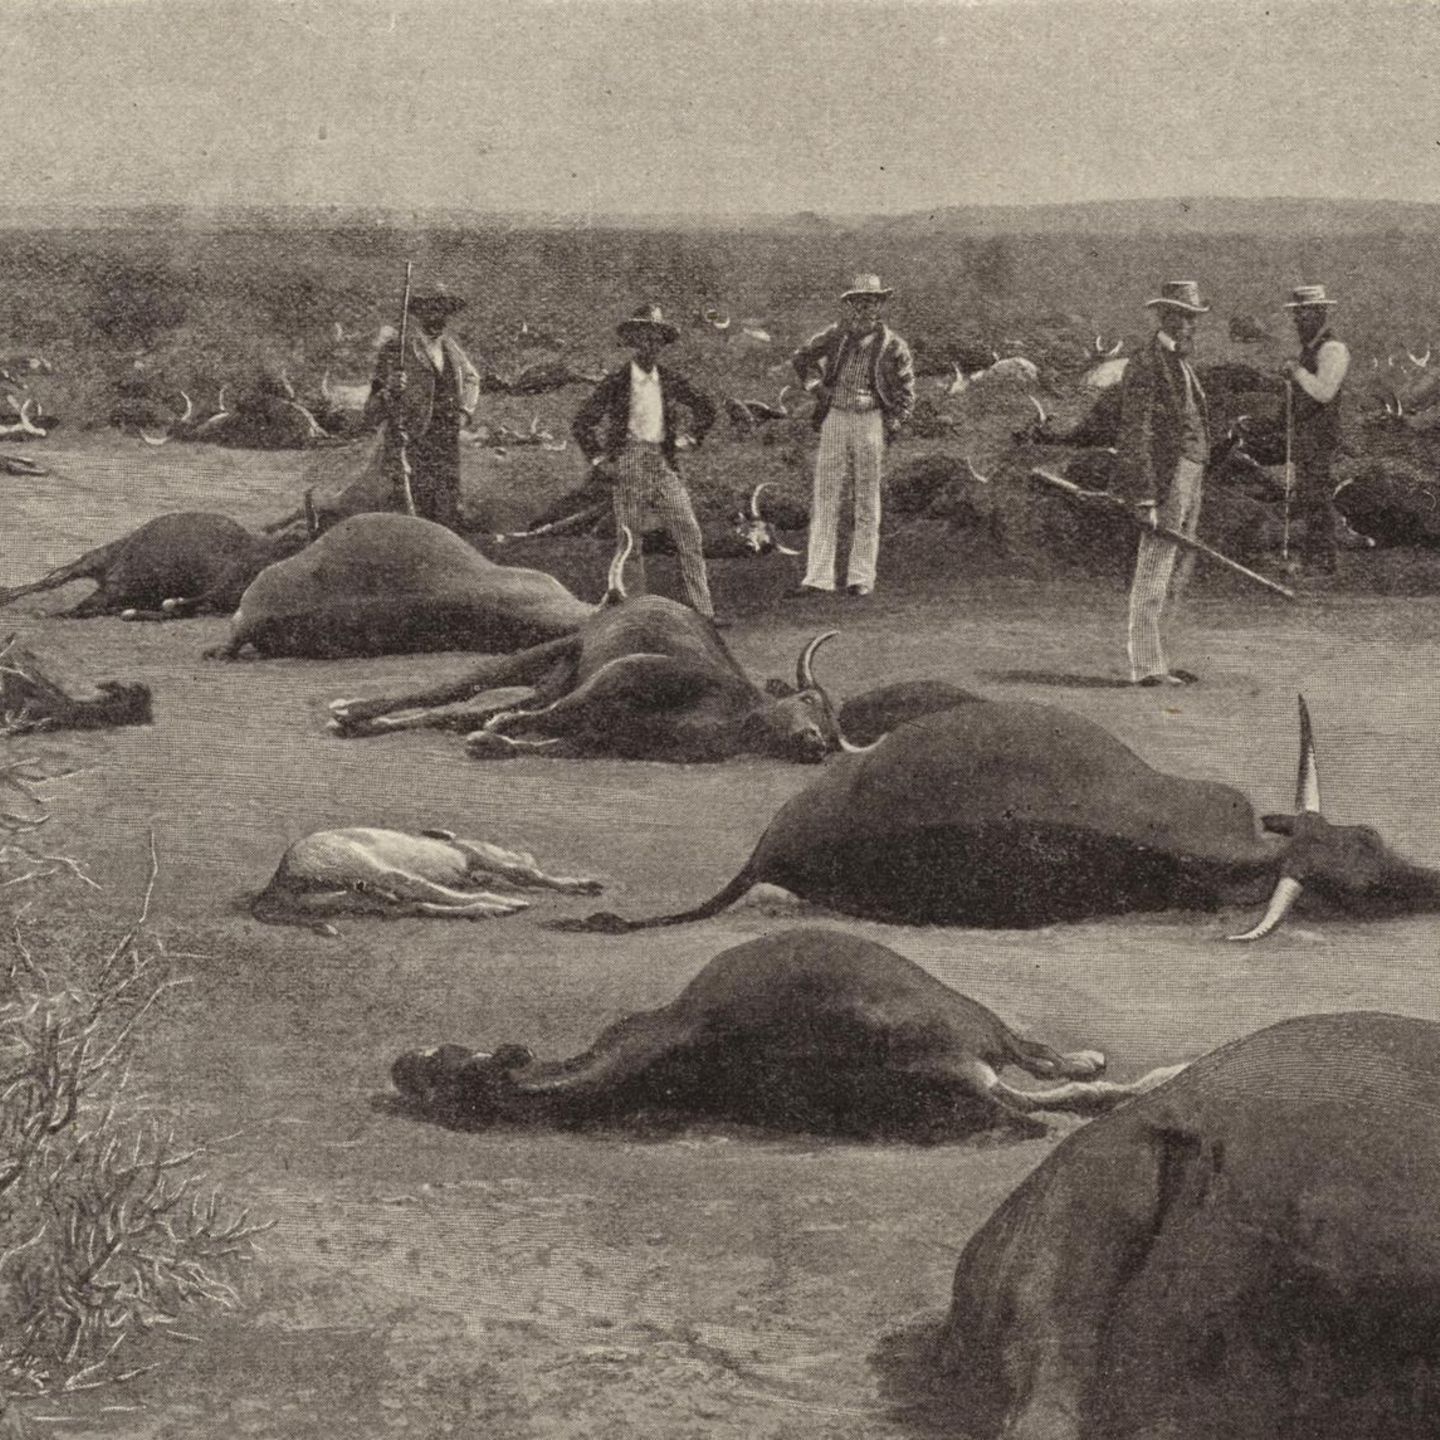 Infizierte Herden wurden erschossen, wie hier um 1900 in Südafrika. Mit drakonischen Maß-nahmen brachten die Kolonialherren viele Einheimische gegen sich auf